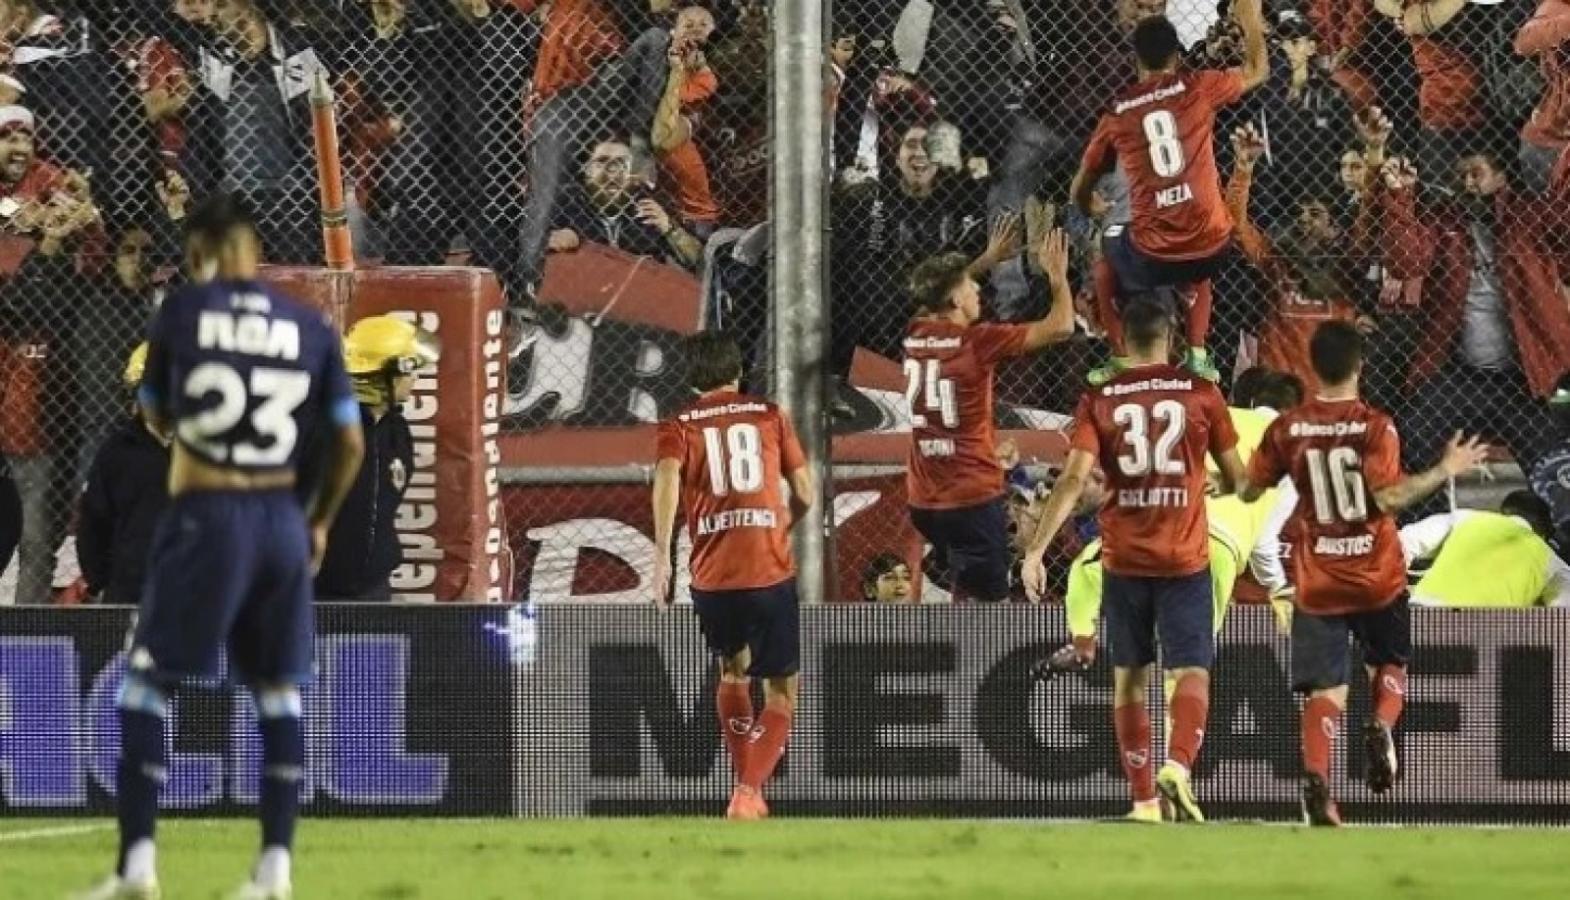 Imagen Triunfo de Independiente 2-0 en el clásico de 2017, con la presencia de Bustos